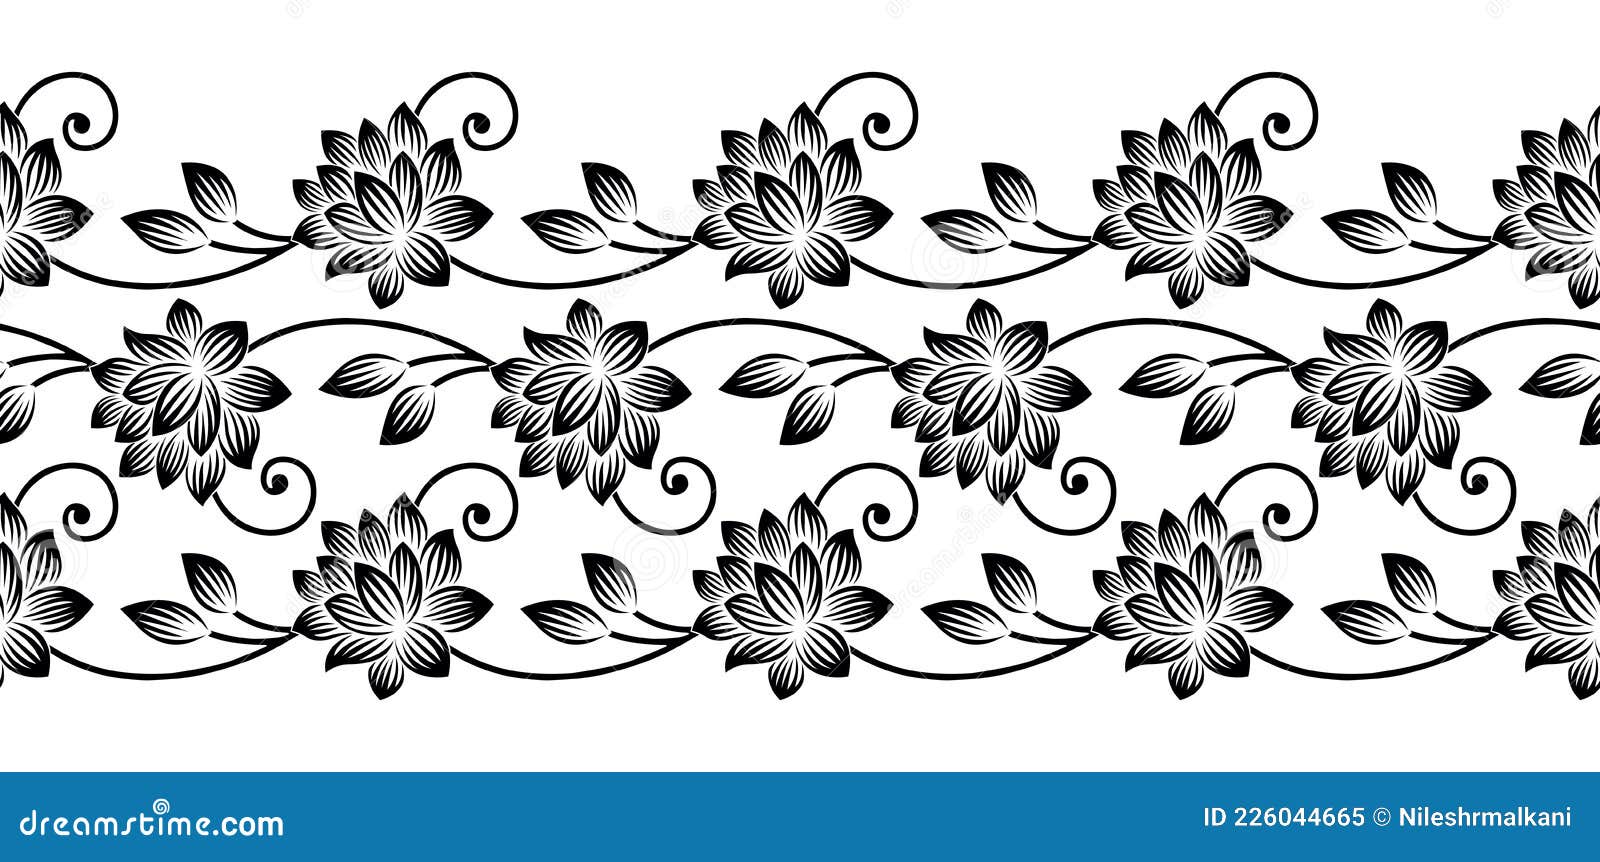 Black and White Lotus Flower Border Design Stock Vector - Illustration